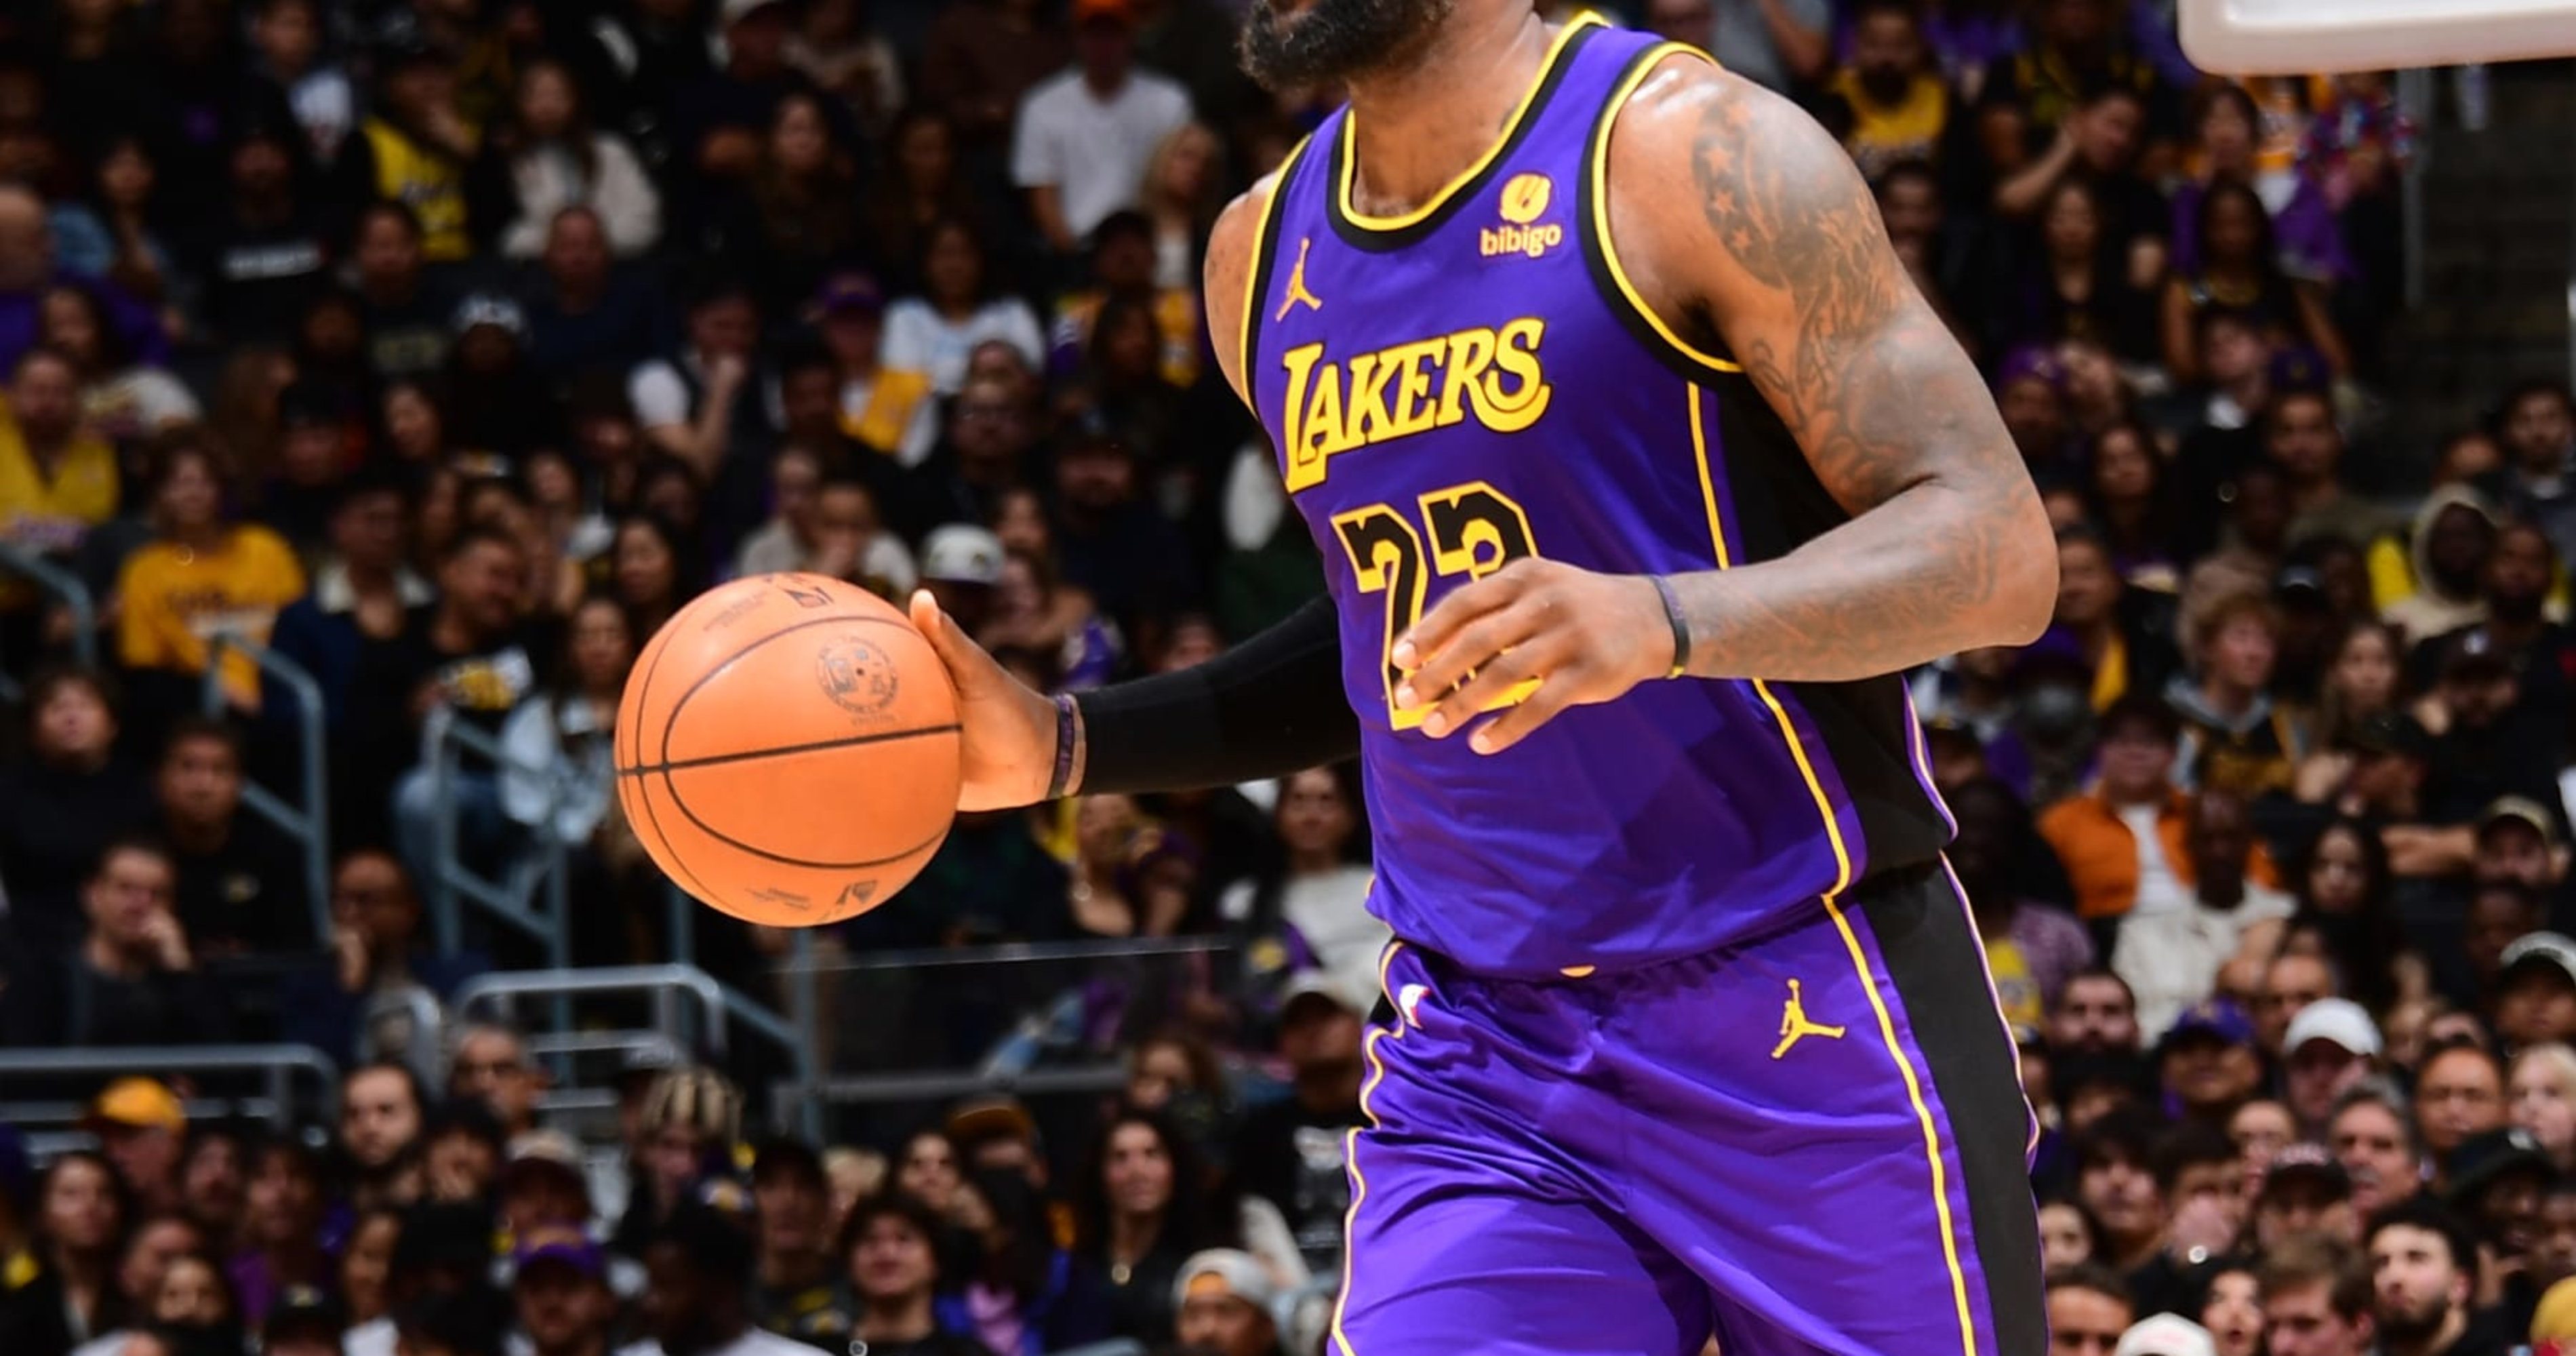 Lakers Fans Demand Trades After LeBron James, LA S